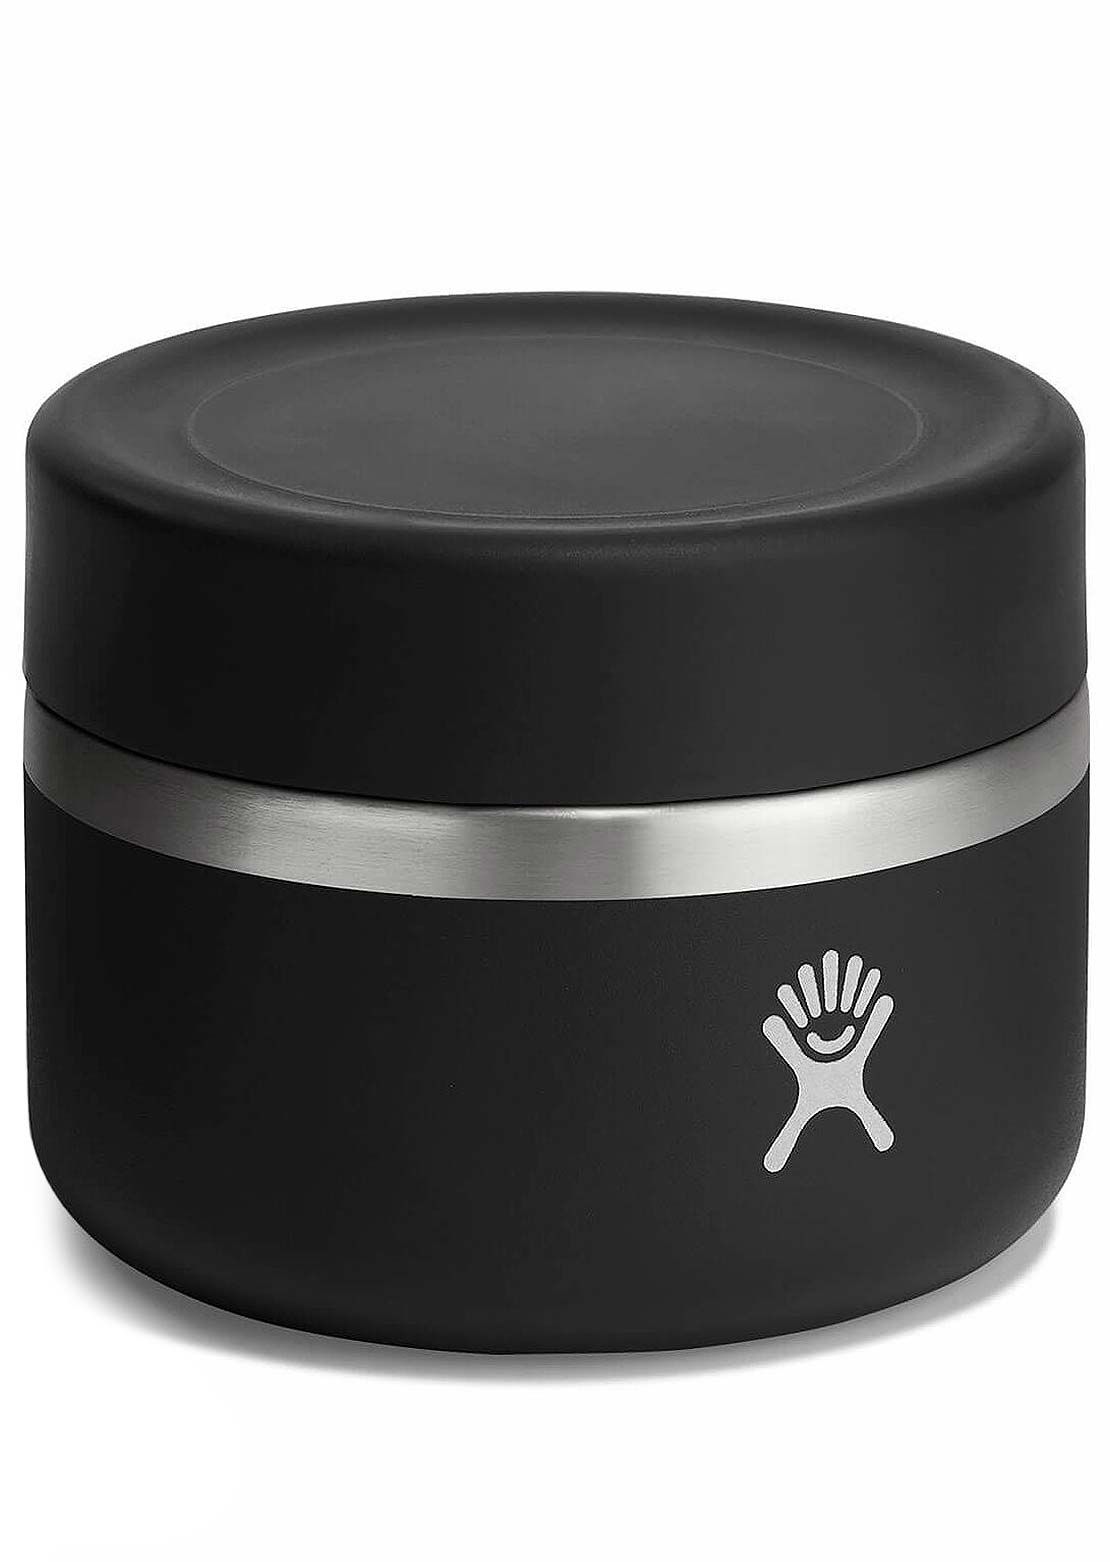 Hydro Flask 12 Oz Insulated Food Jar Black